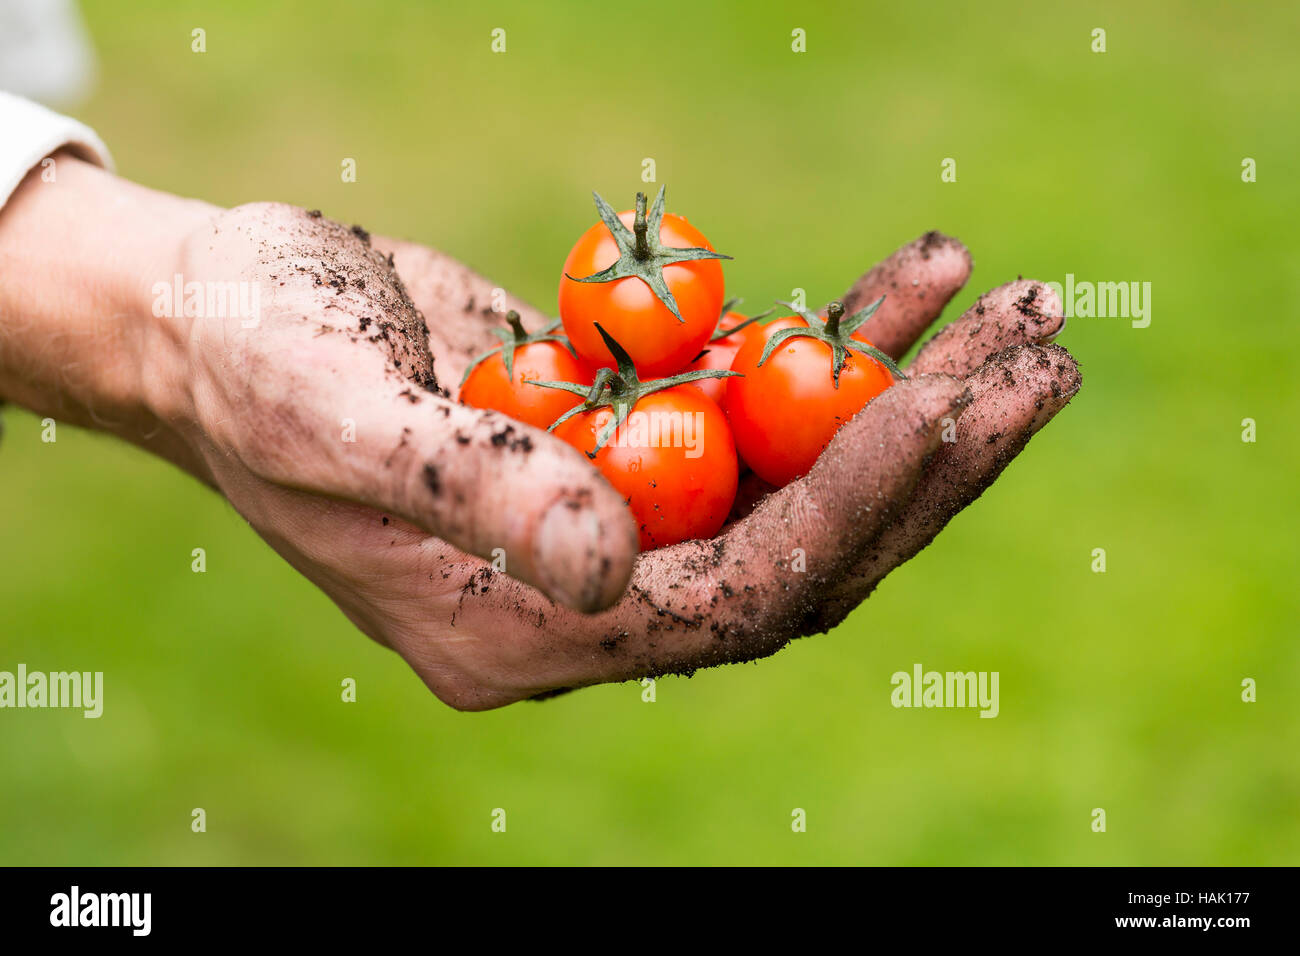 Agricoltura eco - crudo fresco i pomodori in un giardiniere mano Foto Stock